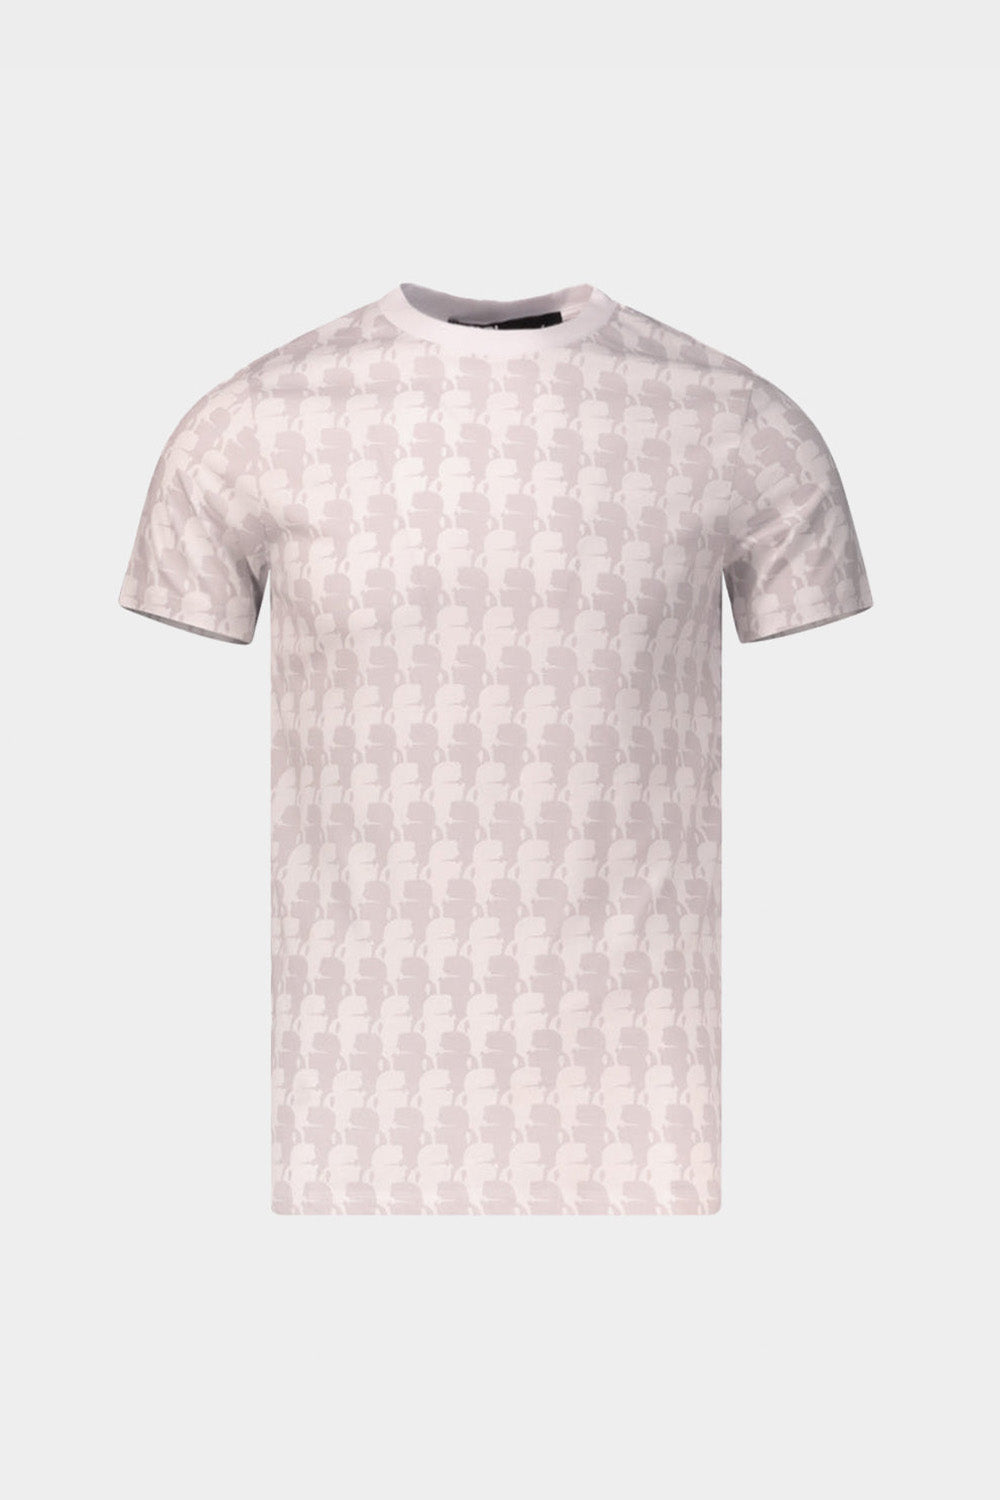 חולצת טי שירט לגברים מוטיב פרופיל KARL LAGERFELD KARL LAGERFELD Vendome online | ונדום .